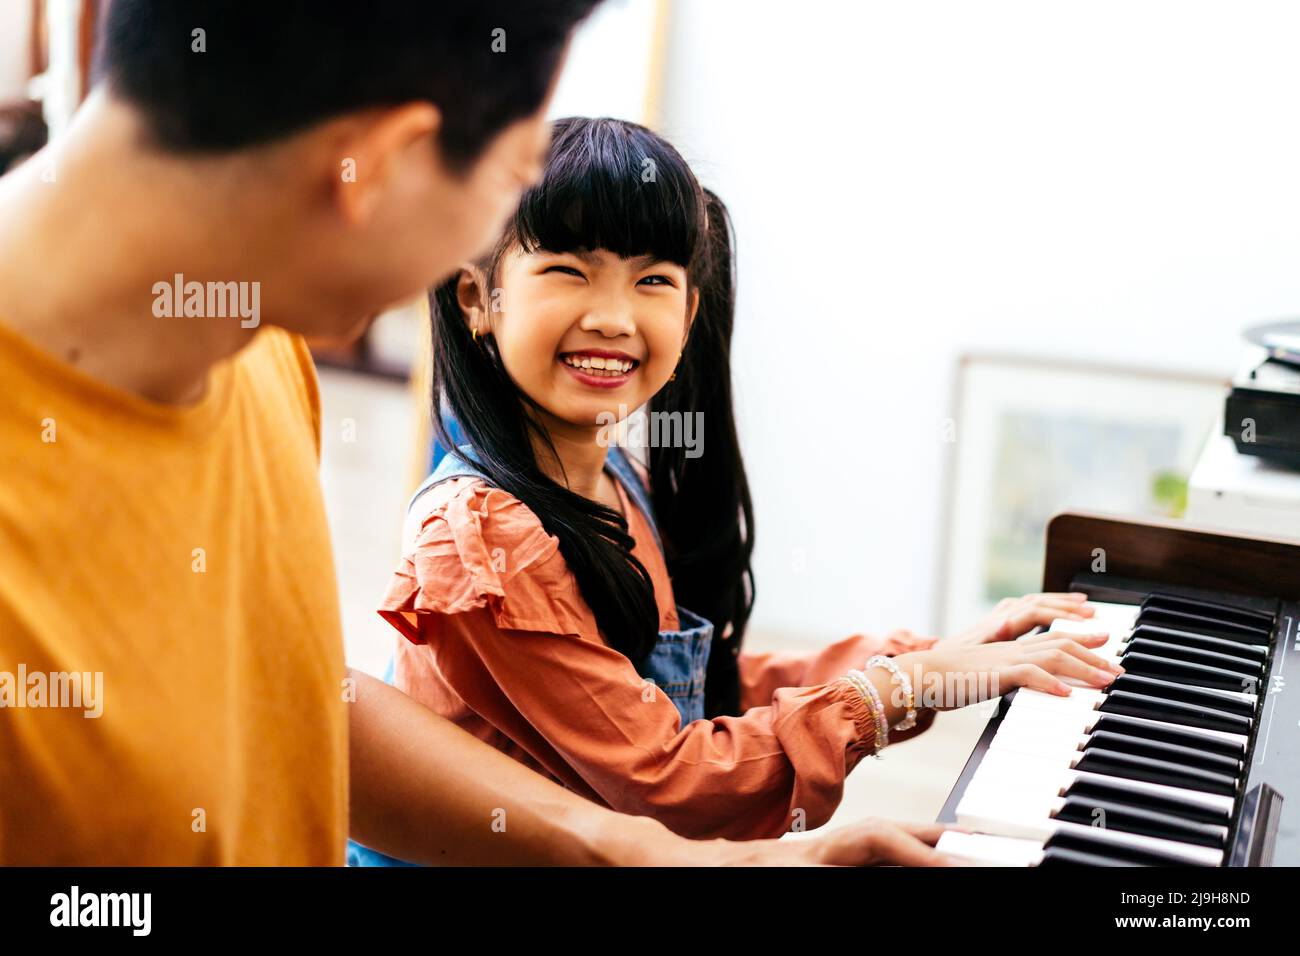 Fröhliche asiatische Tochter in legerer Kleidung mit Zöpfen, die lächeln und Papa anblicken, während sie sich tagsüber zu Hause zum Klavierspielen neigt Stockfoto